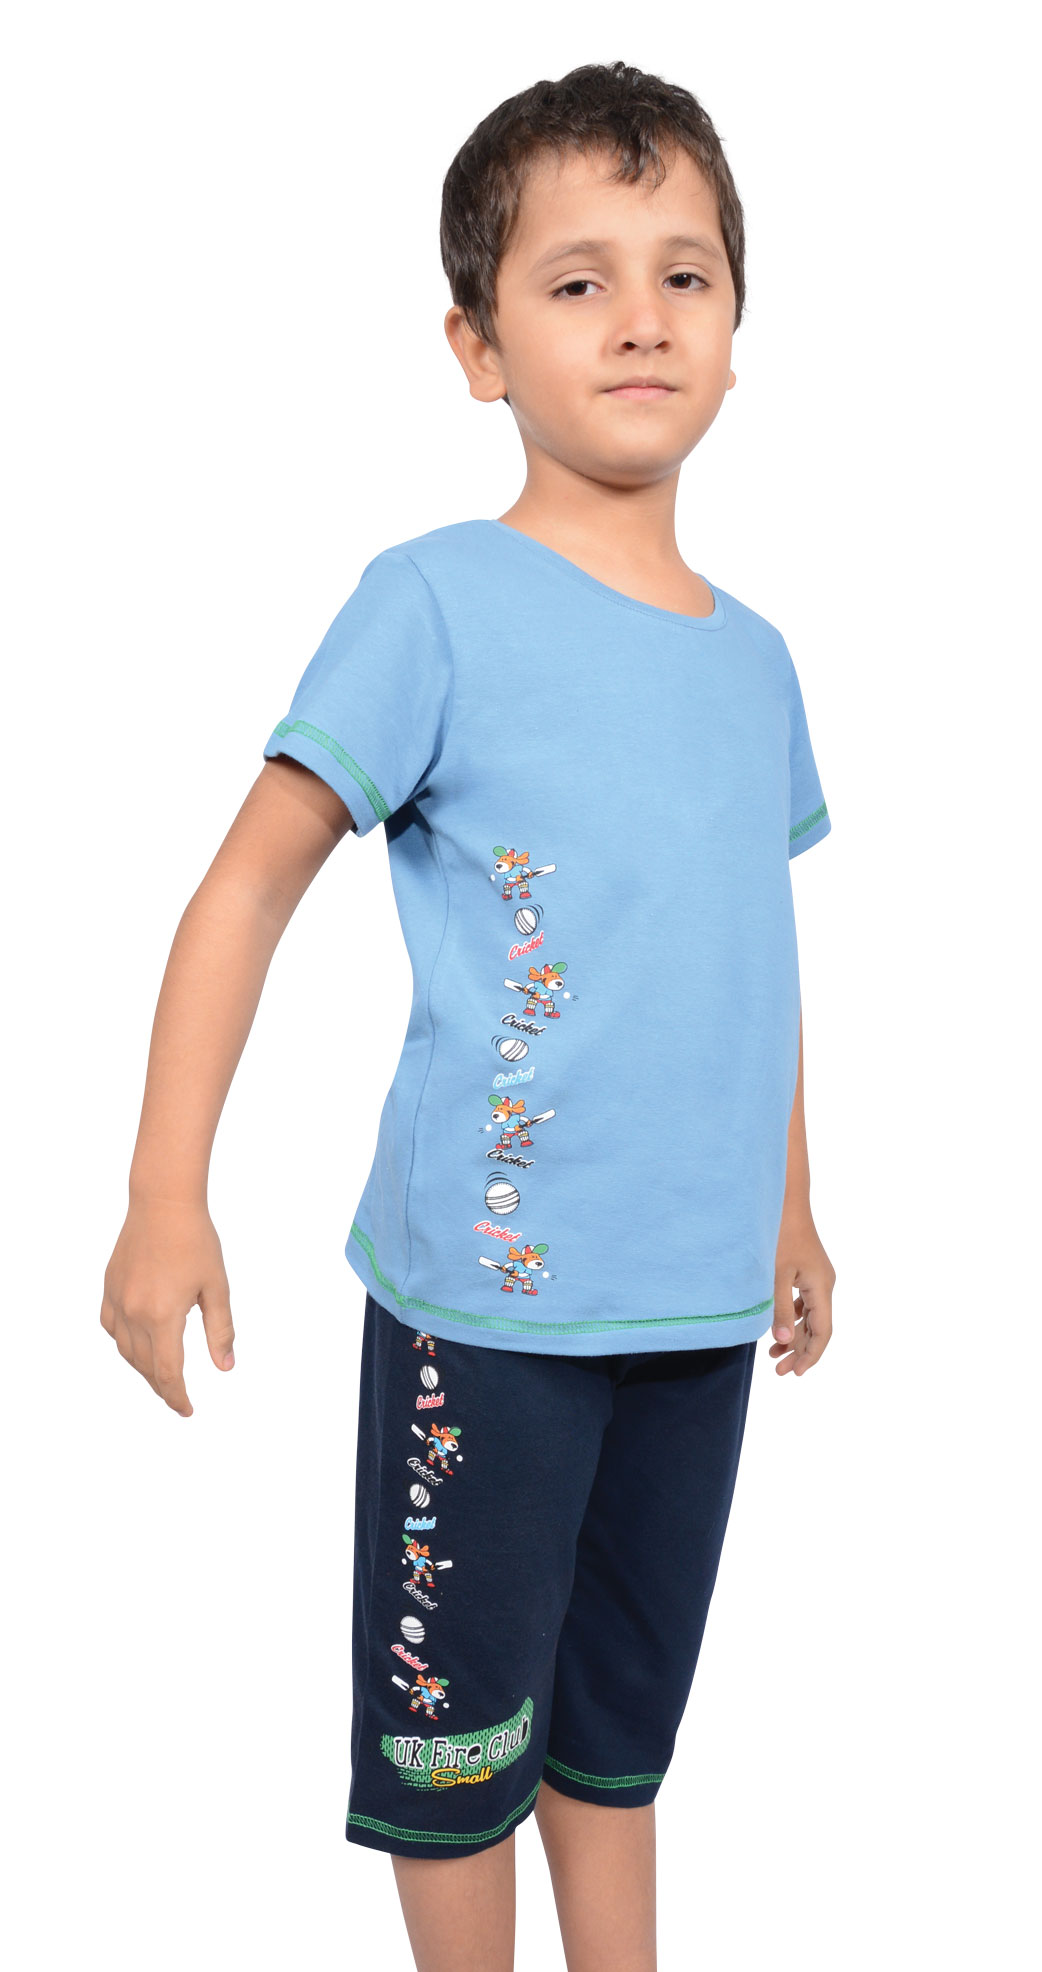 Пижамы для мальчиков с каприми 89838